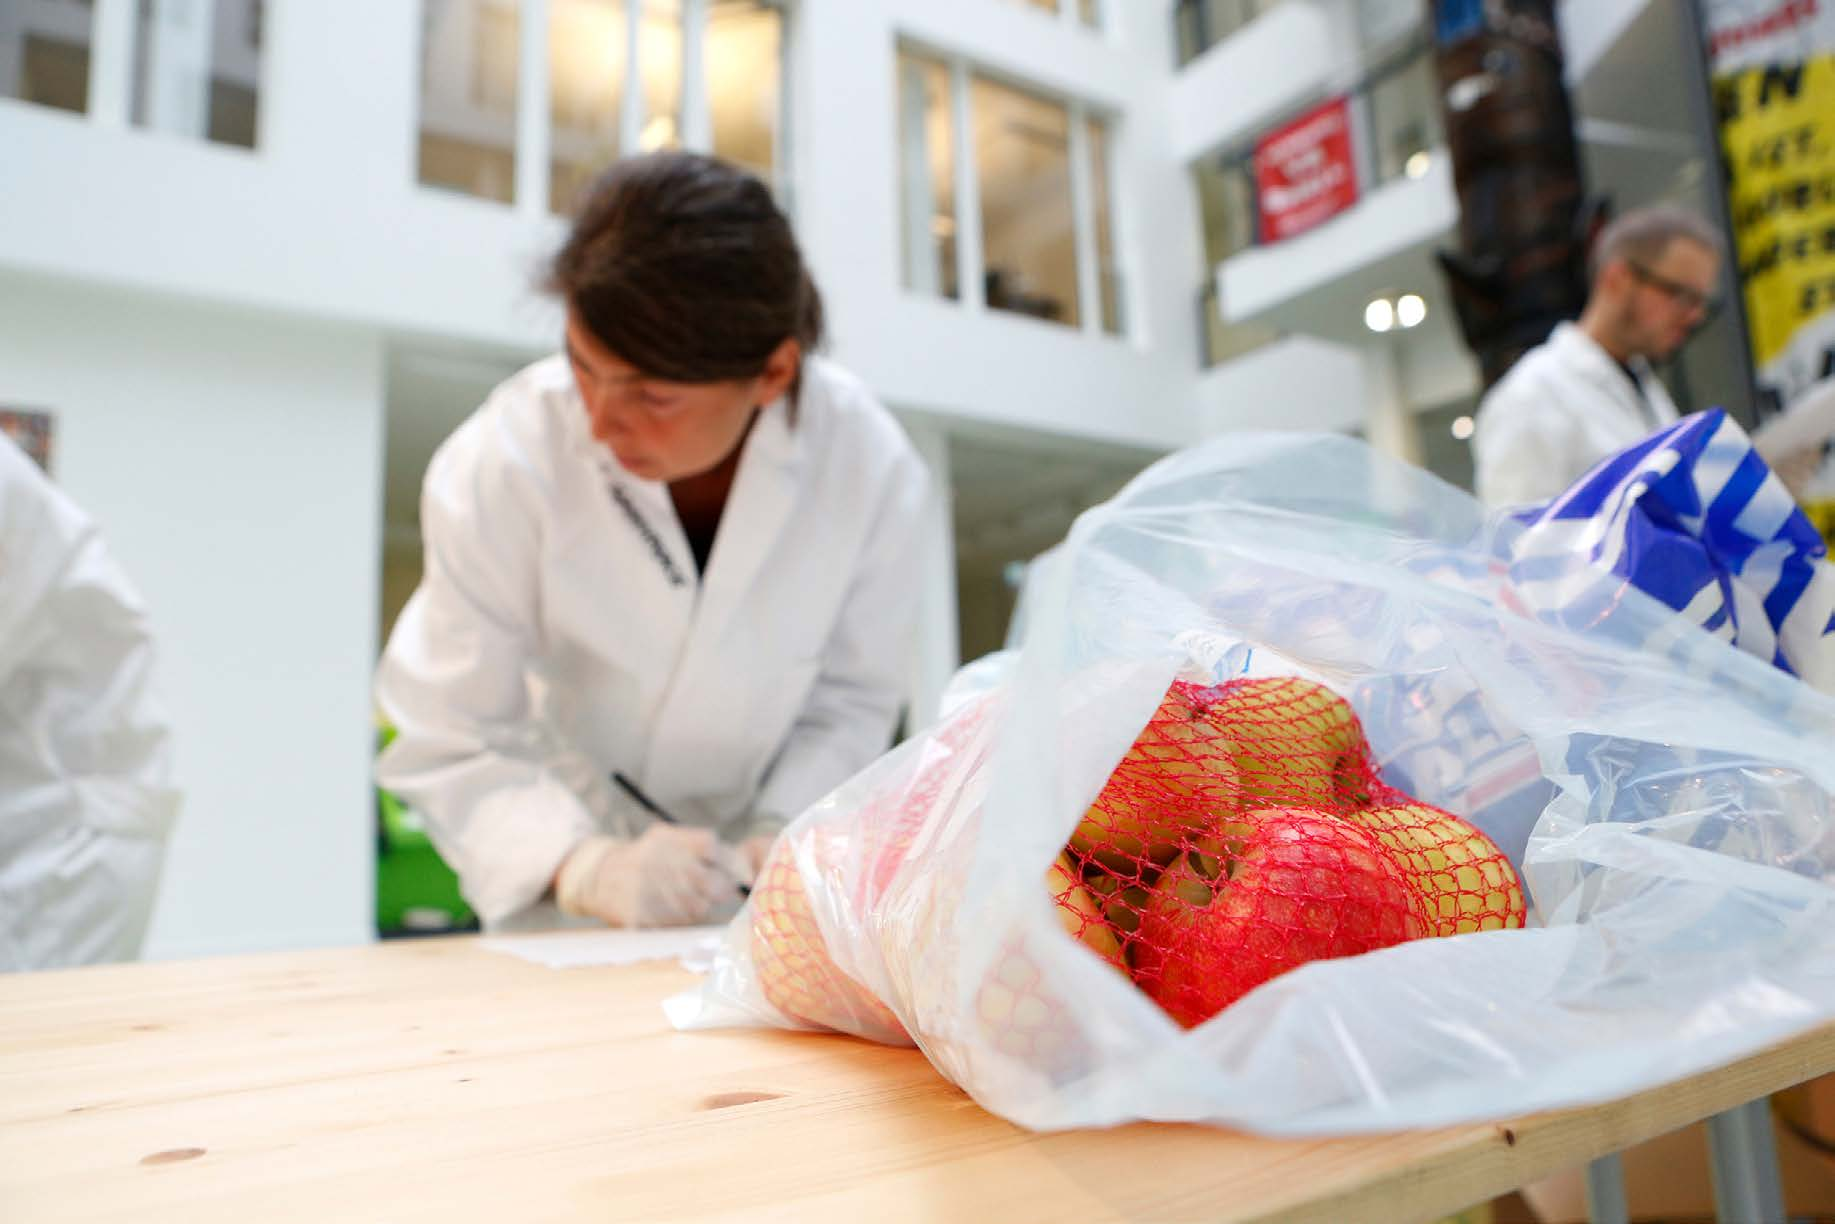 Joerg Modrow / Greenpeace Pesticiden op appels uit de supermarkt Alle monsters van de appels uit de supermarkt voldeden aan de wettelijke normen (Maximale Residu Limiet) voor residuen van